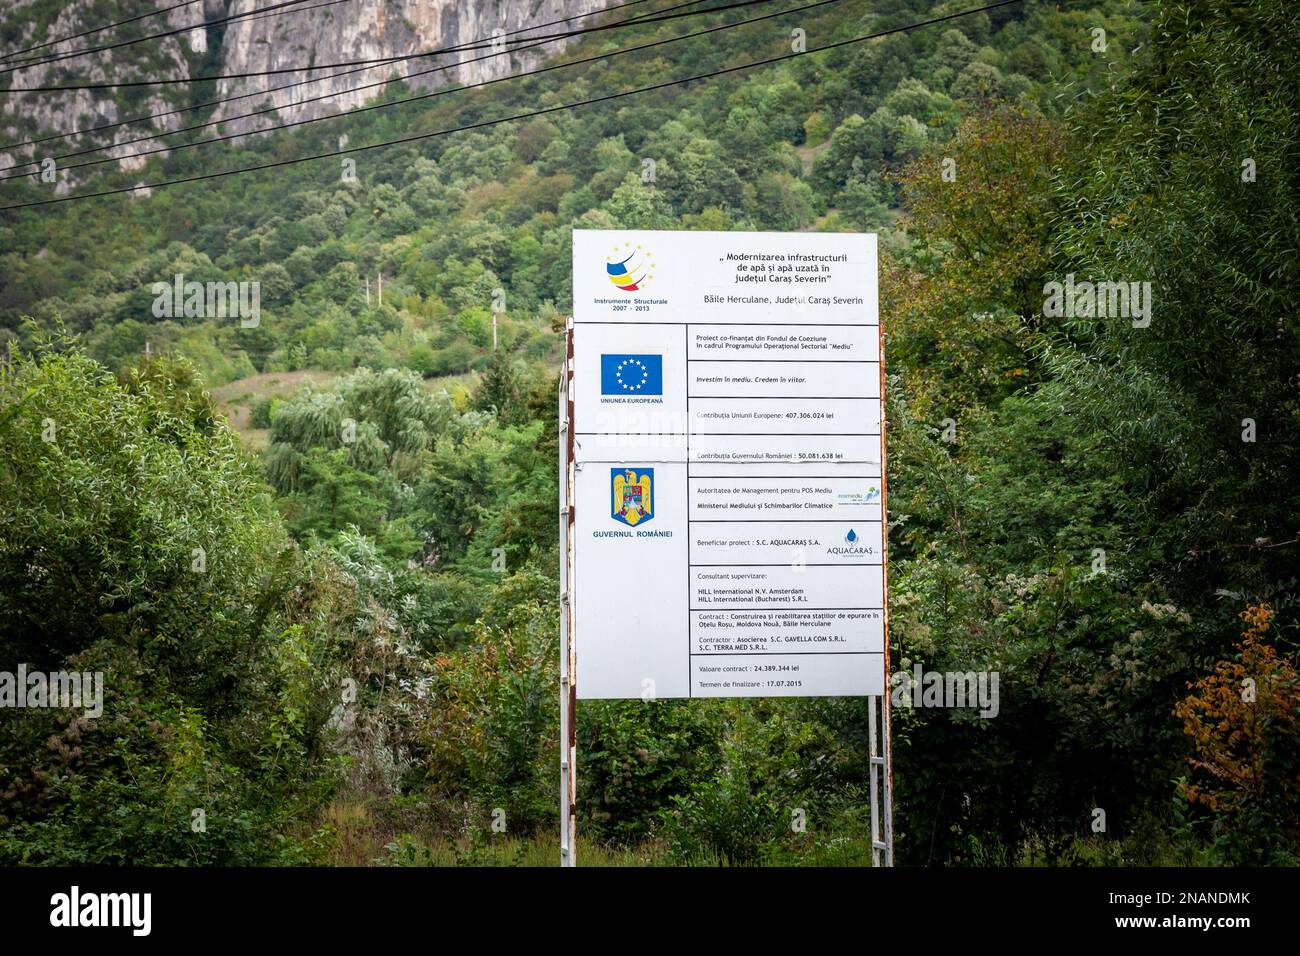 Immagine di un segno che indica che un progetto di ricostruzione è finanziato dal governo rumeno e dall'Unione europea in Romania, a Baile Herculane. Foto Stock